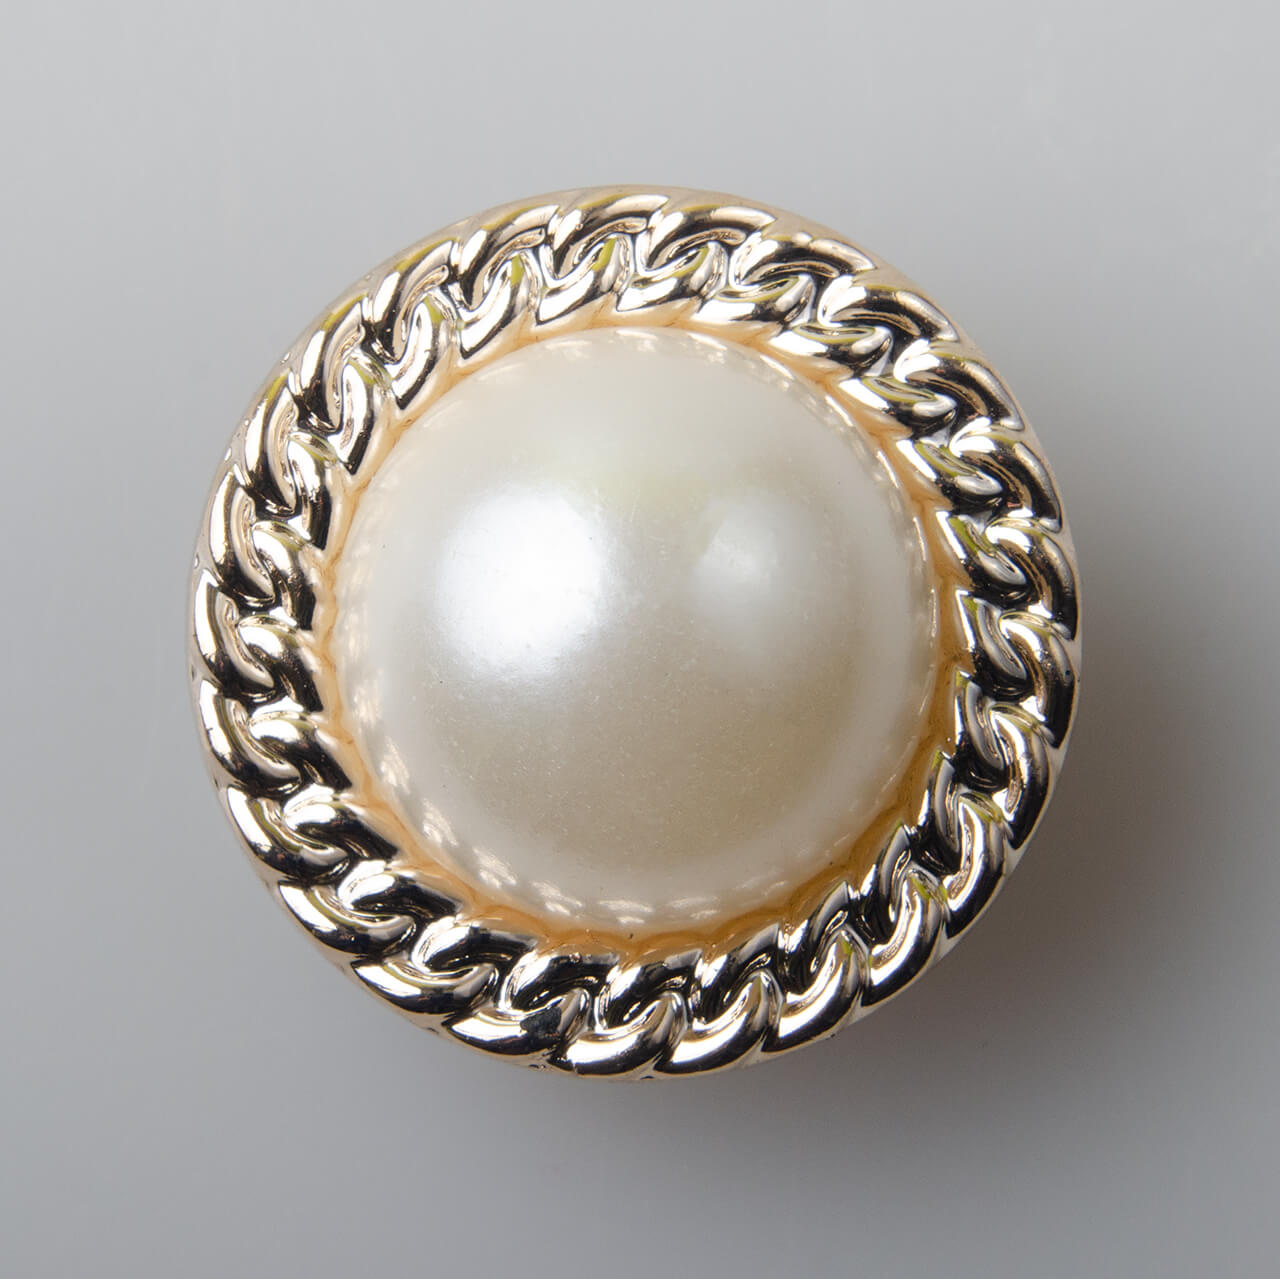 Guzik elegancki perłowy, tworzywo sztuczne, śr. 25 mm, kolor złoty (JD79)